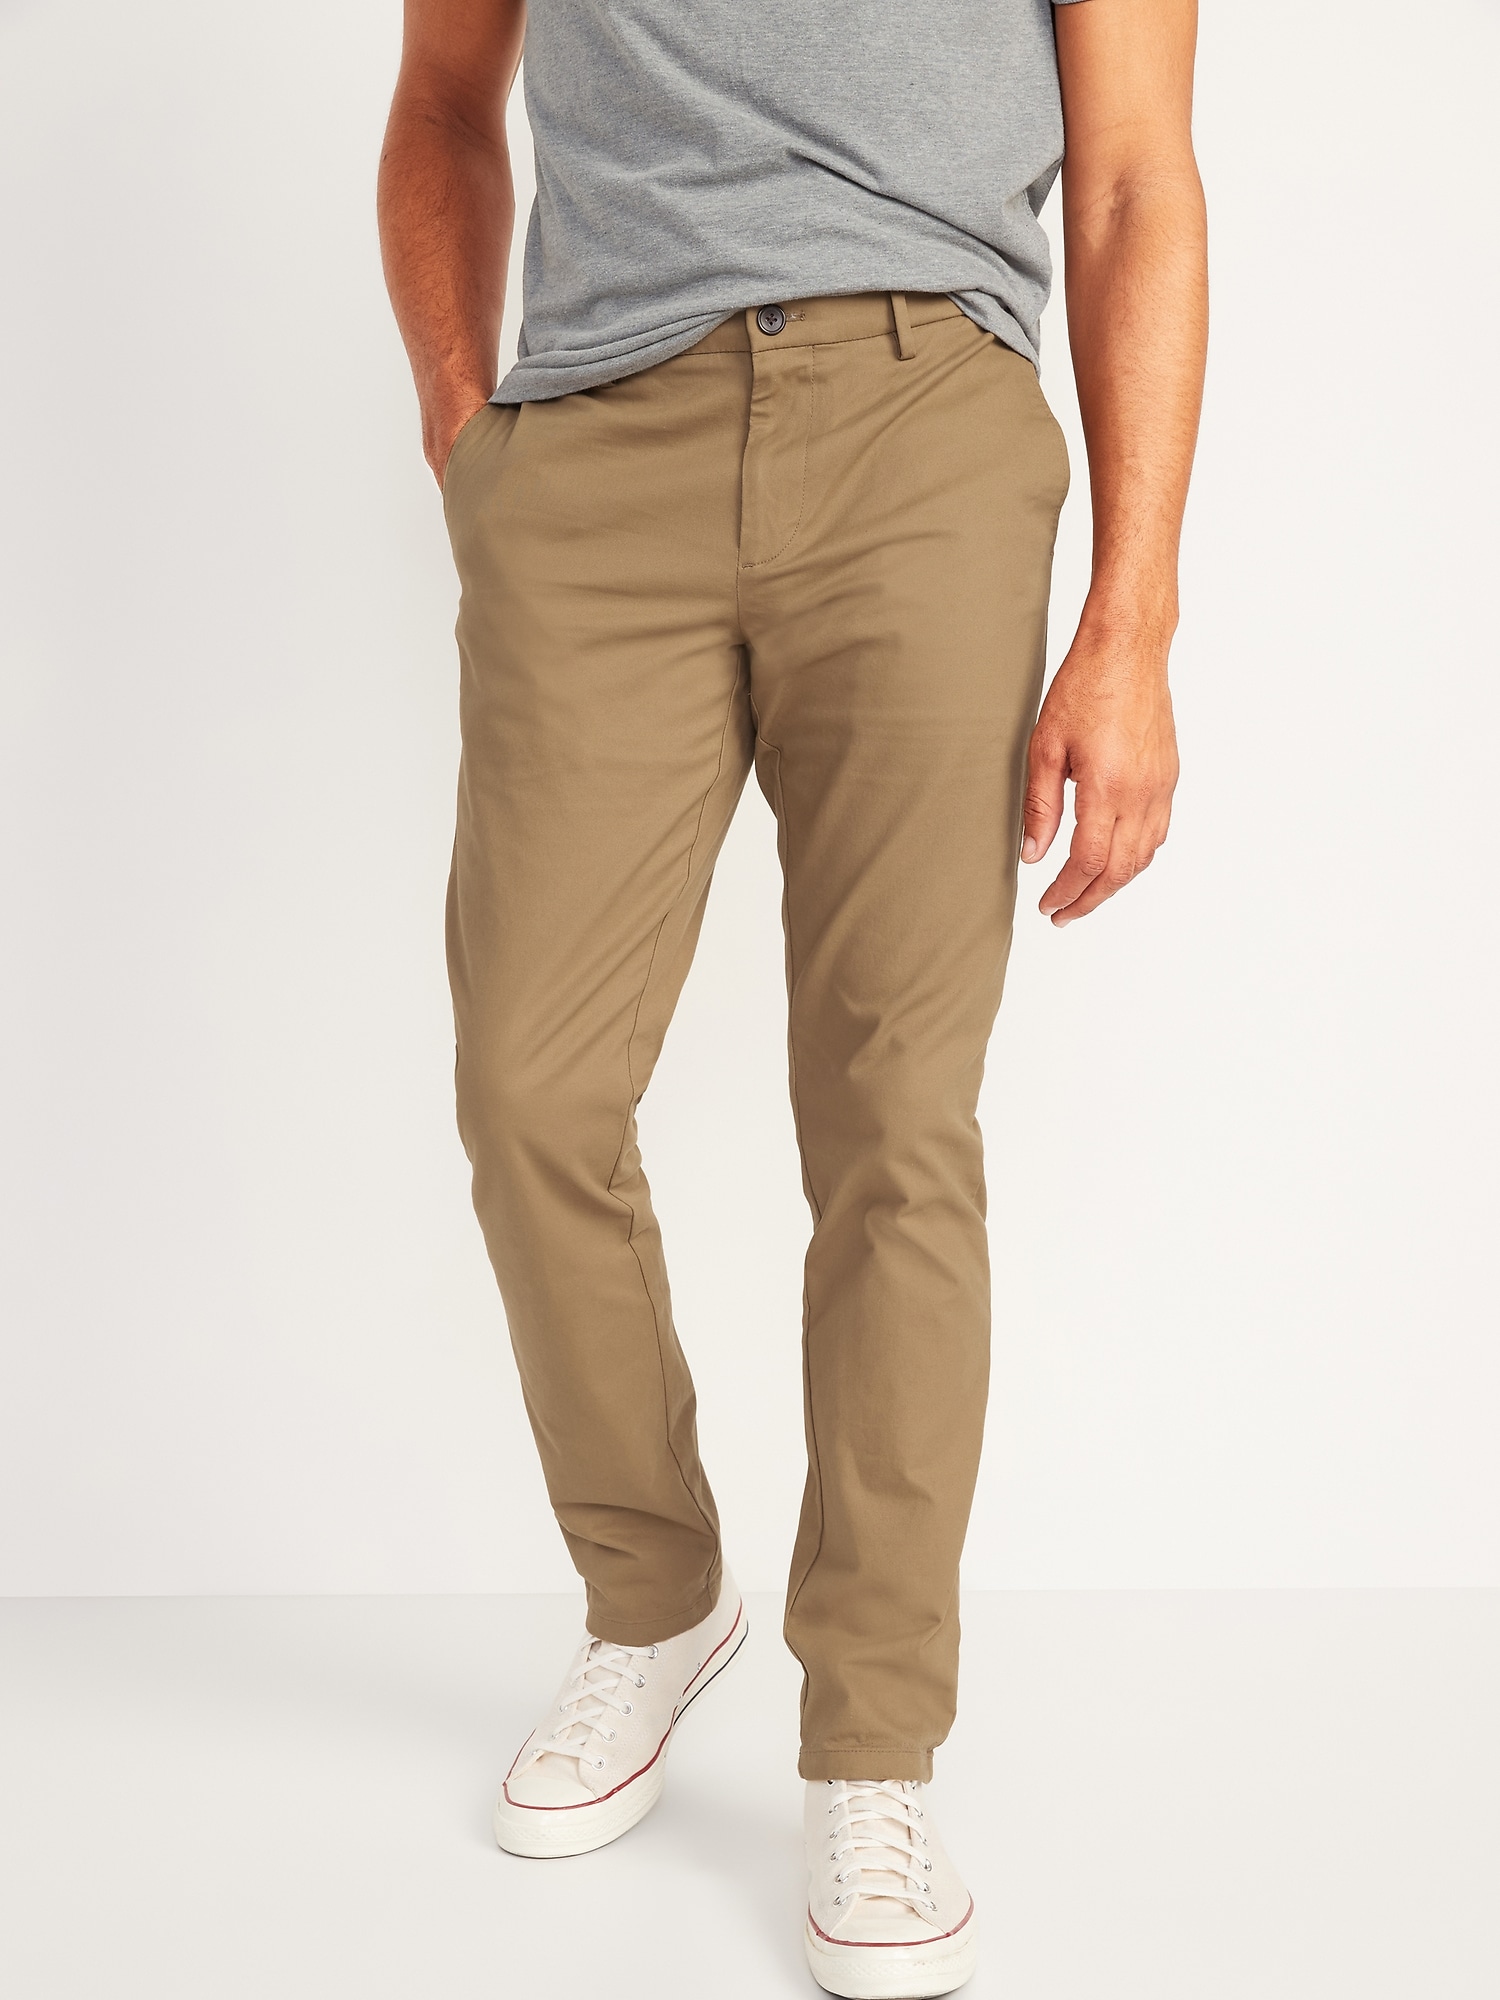 Shop Khaki Jeans Pants For Men online | Lazada.com.ph